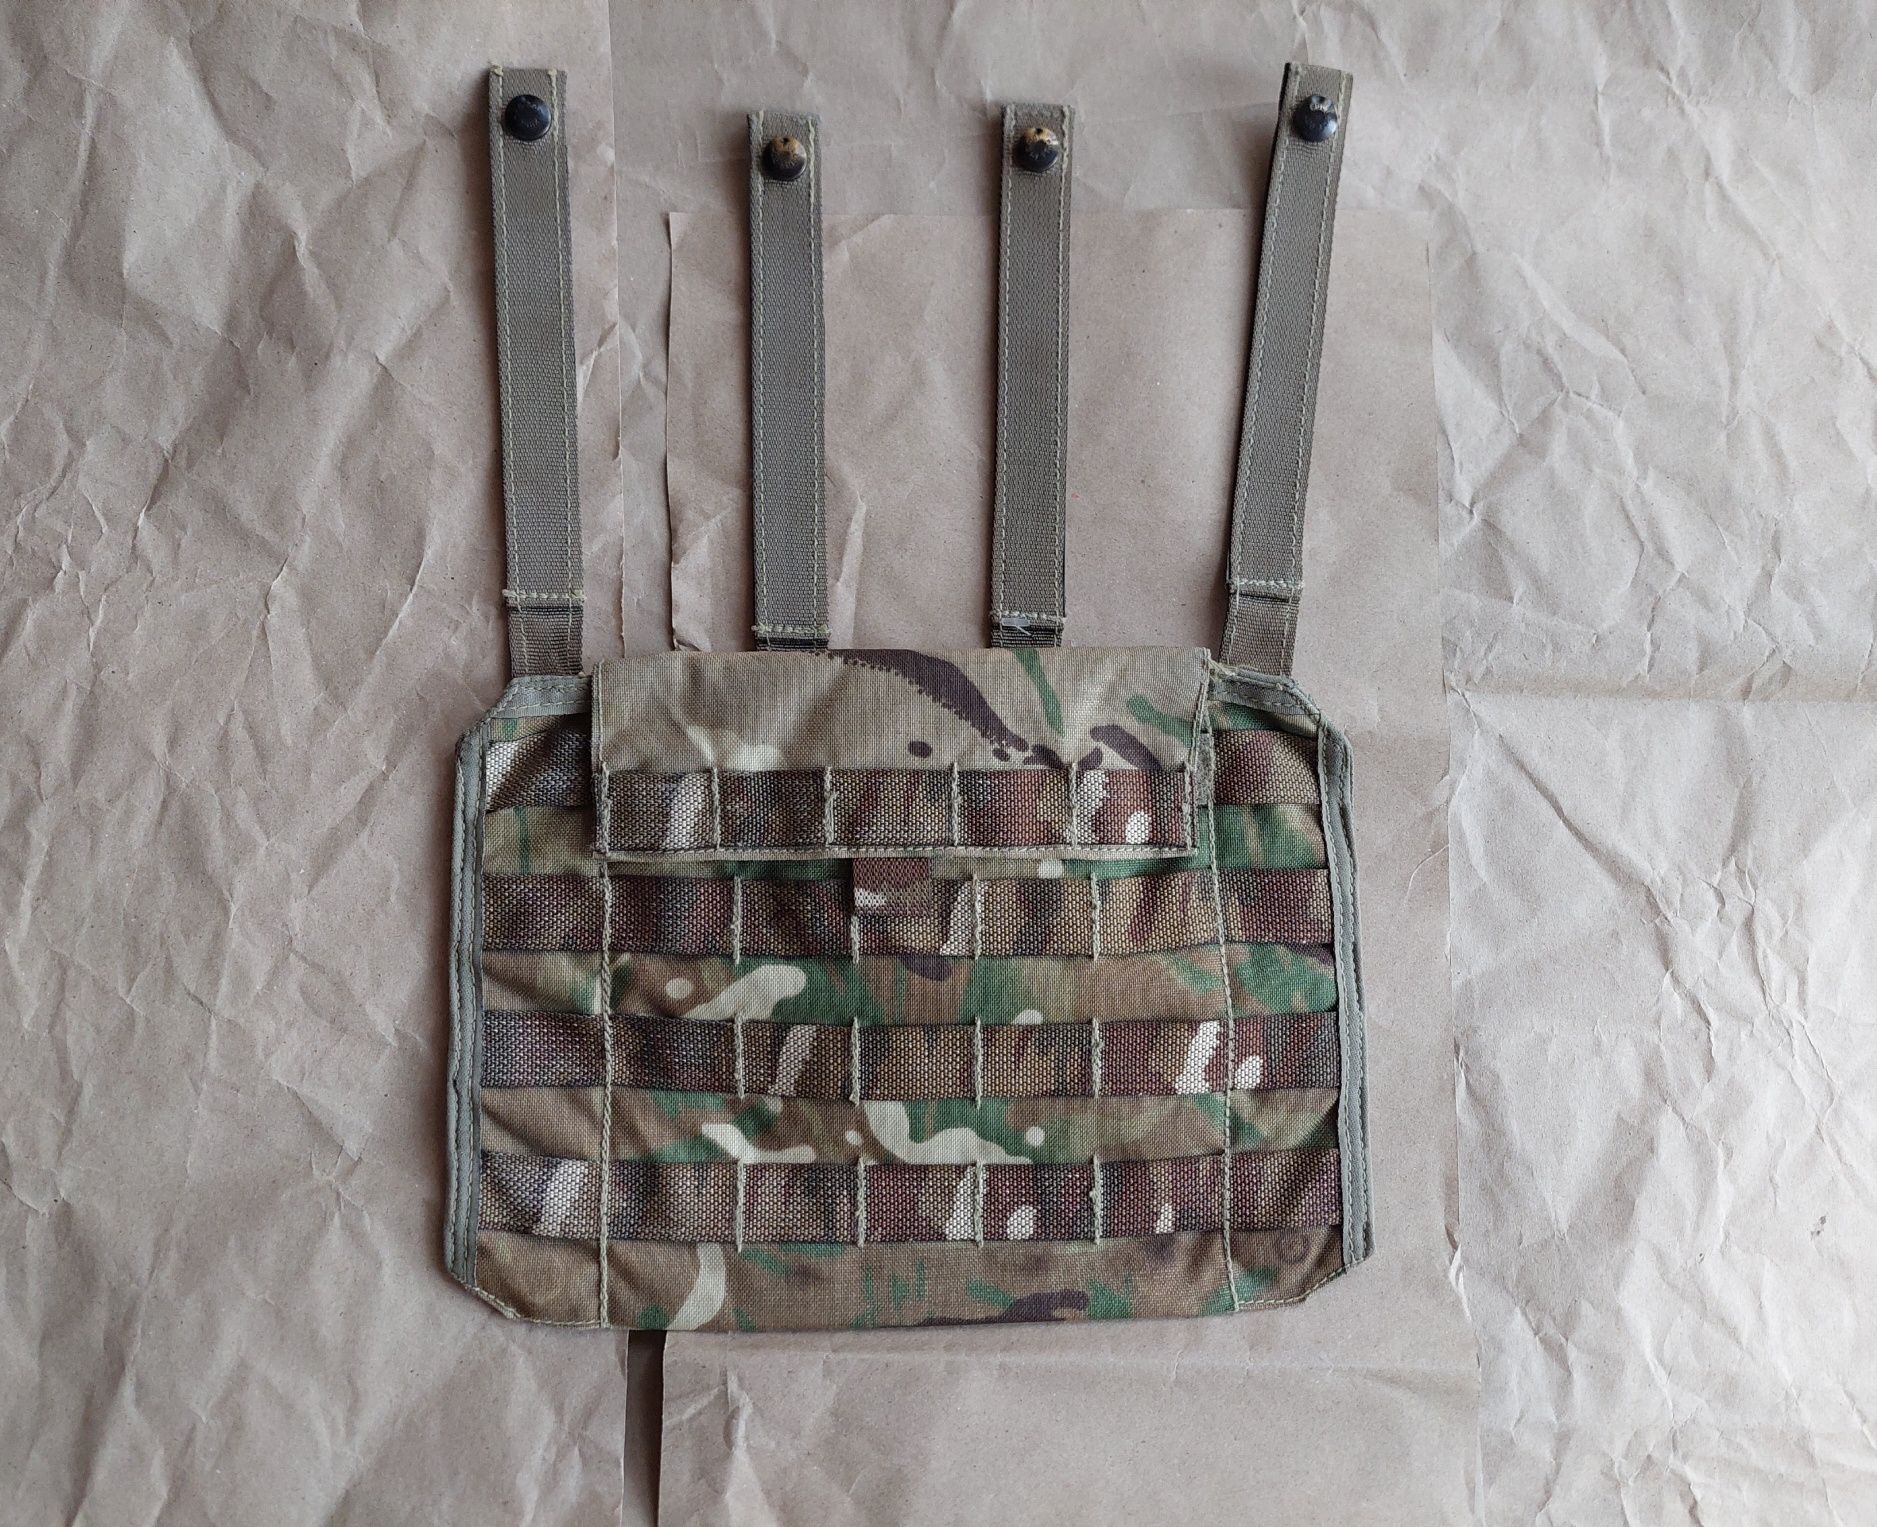 Боковая защита для бронежилета Osprey бокова панель чехол бронежилета